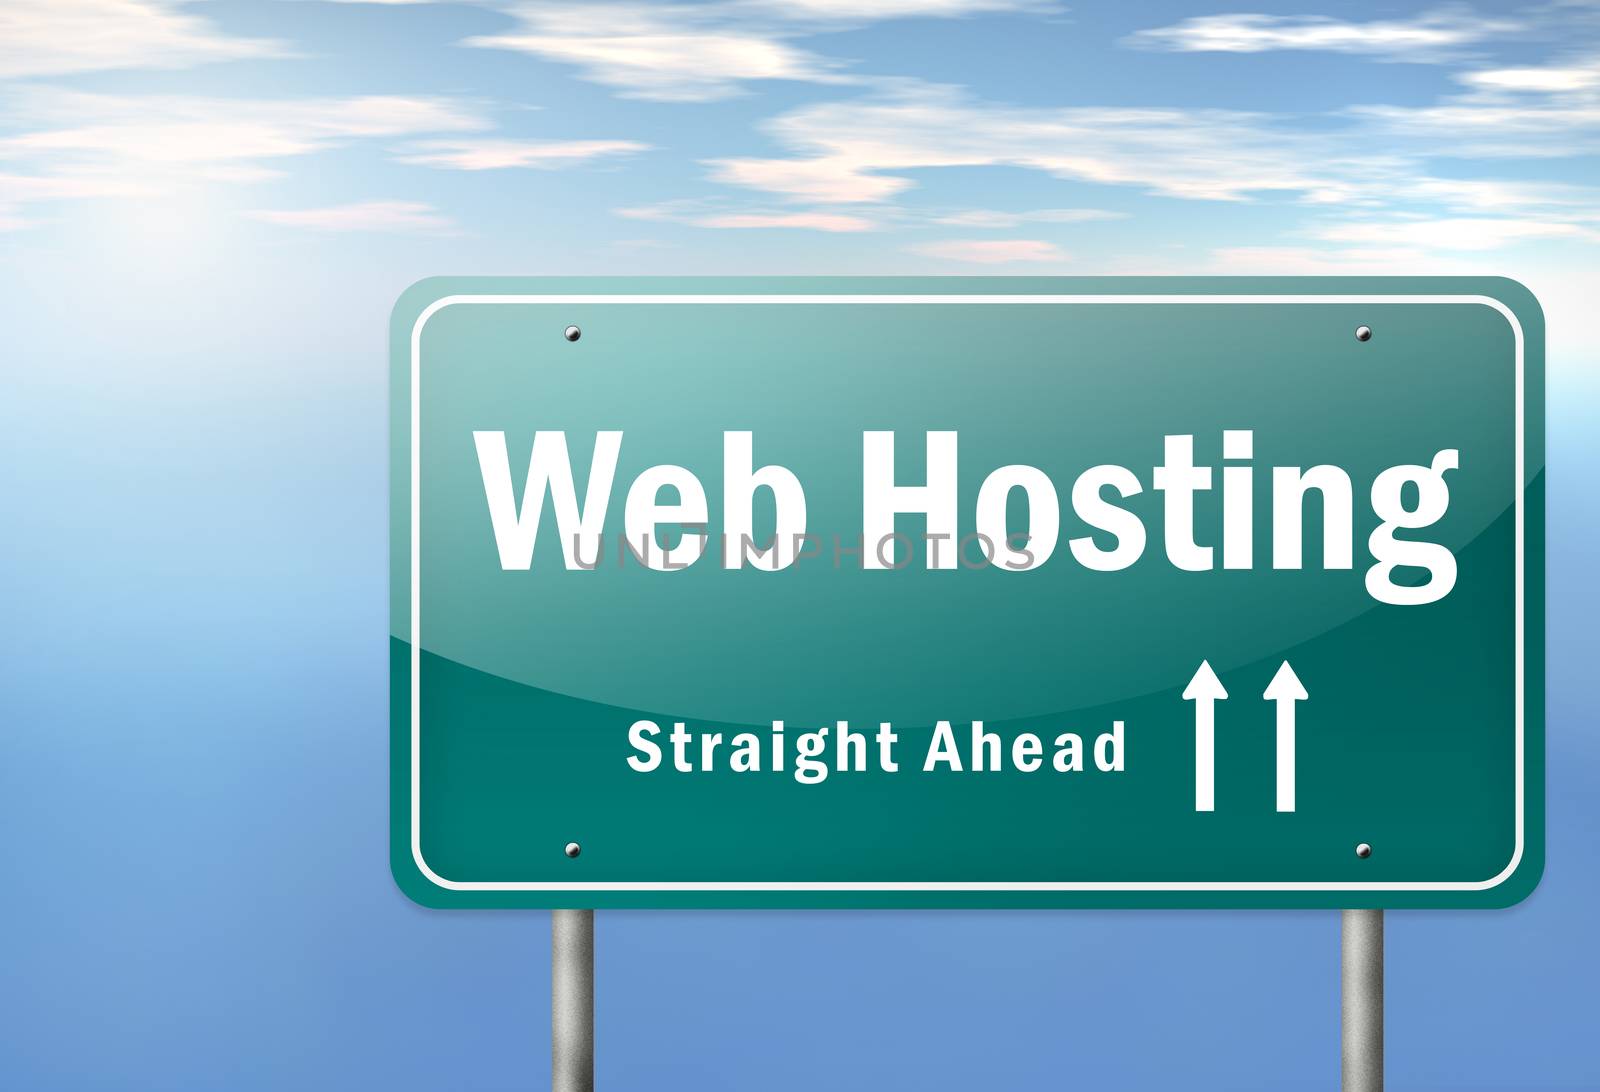 Highway Signpost "Web Hosting" by mindscanner